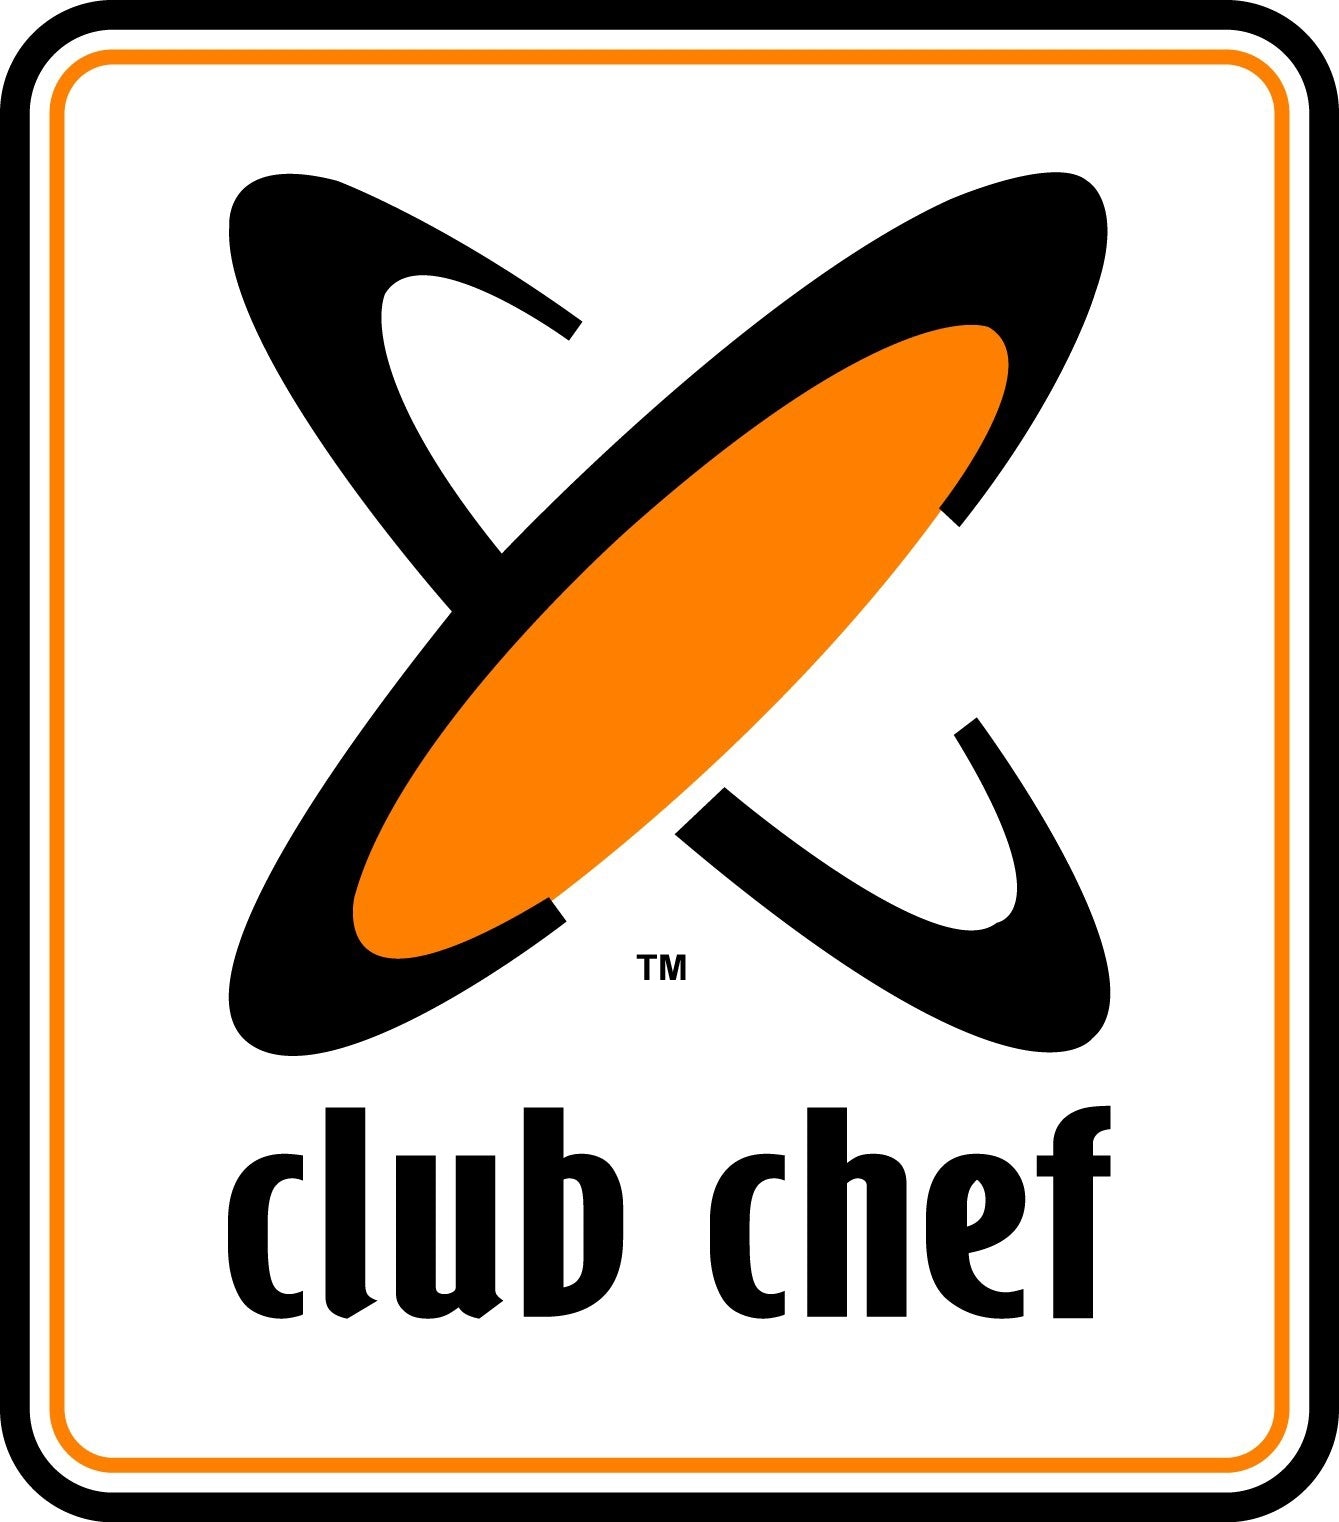 Chef Club Bib Apron - Regular - With Pocket OS Chefwear by Chef Club | The Bloke Shop